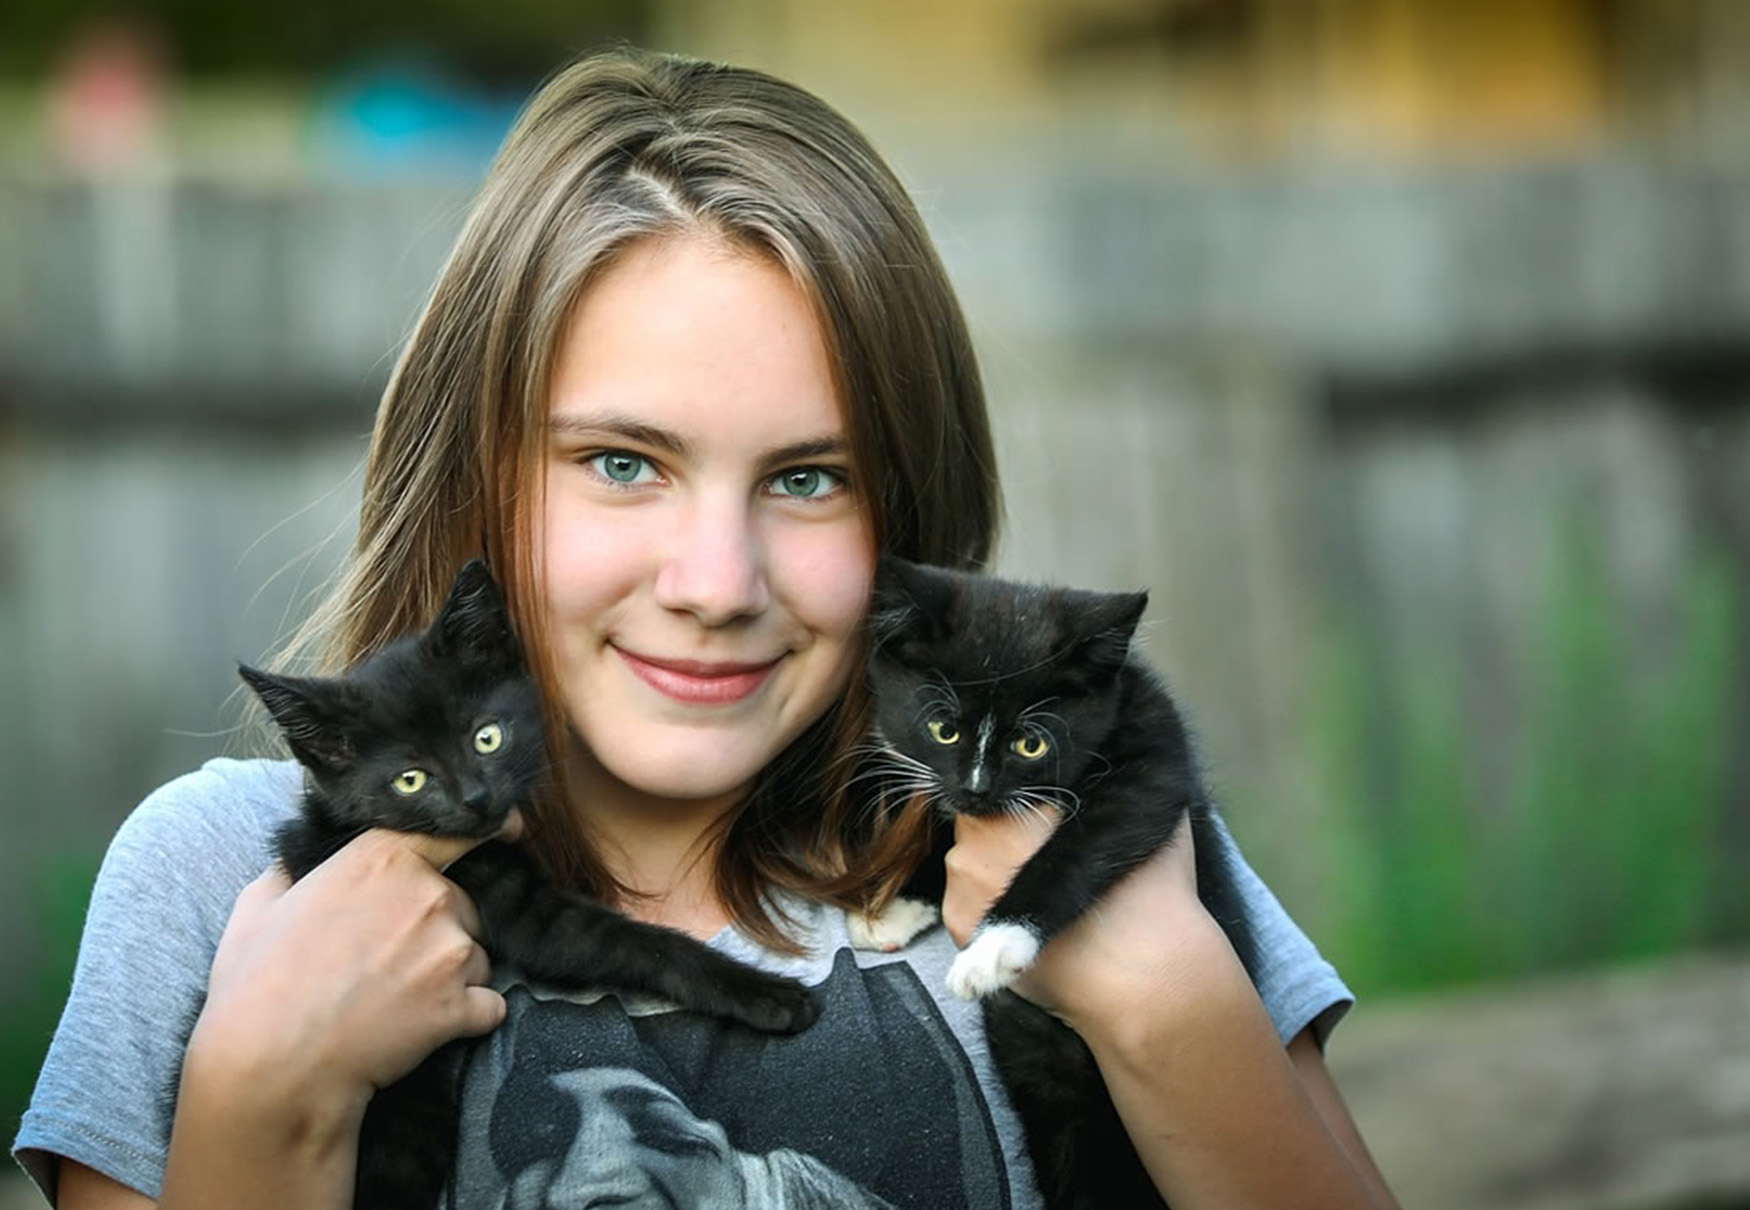 ragazza tiene due gattini in braccio